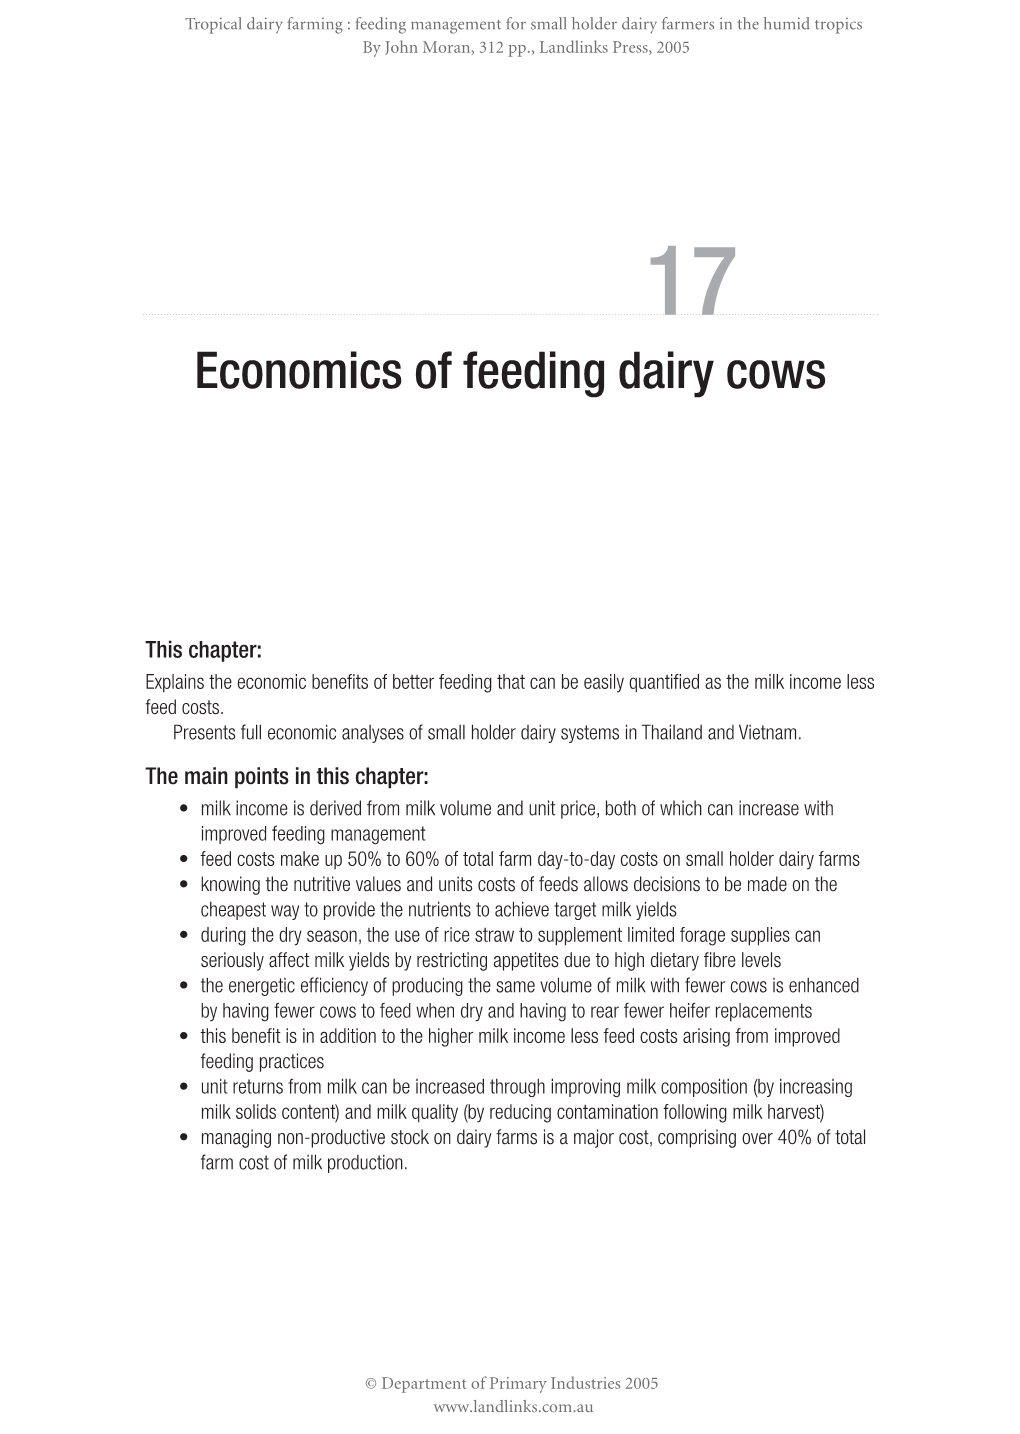 Economics of Feeding Dairy Cows